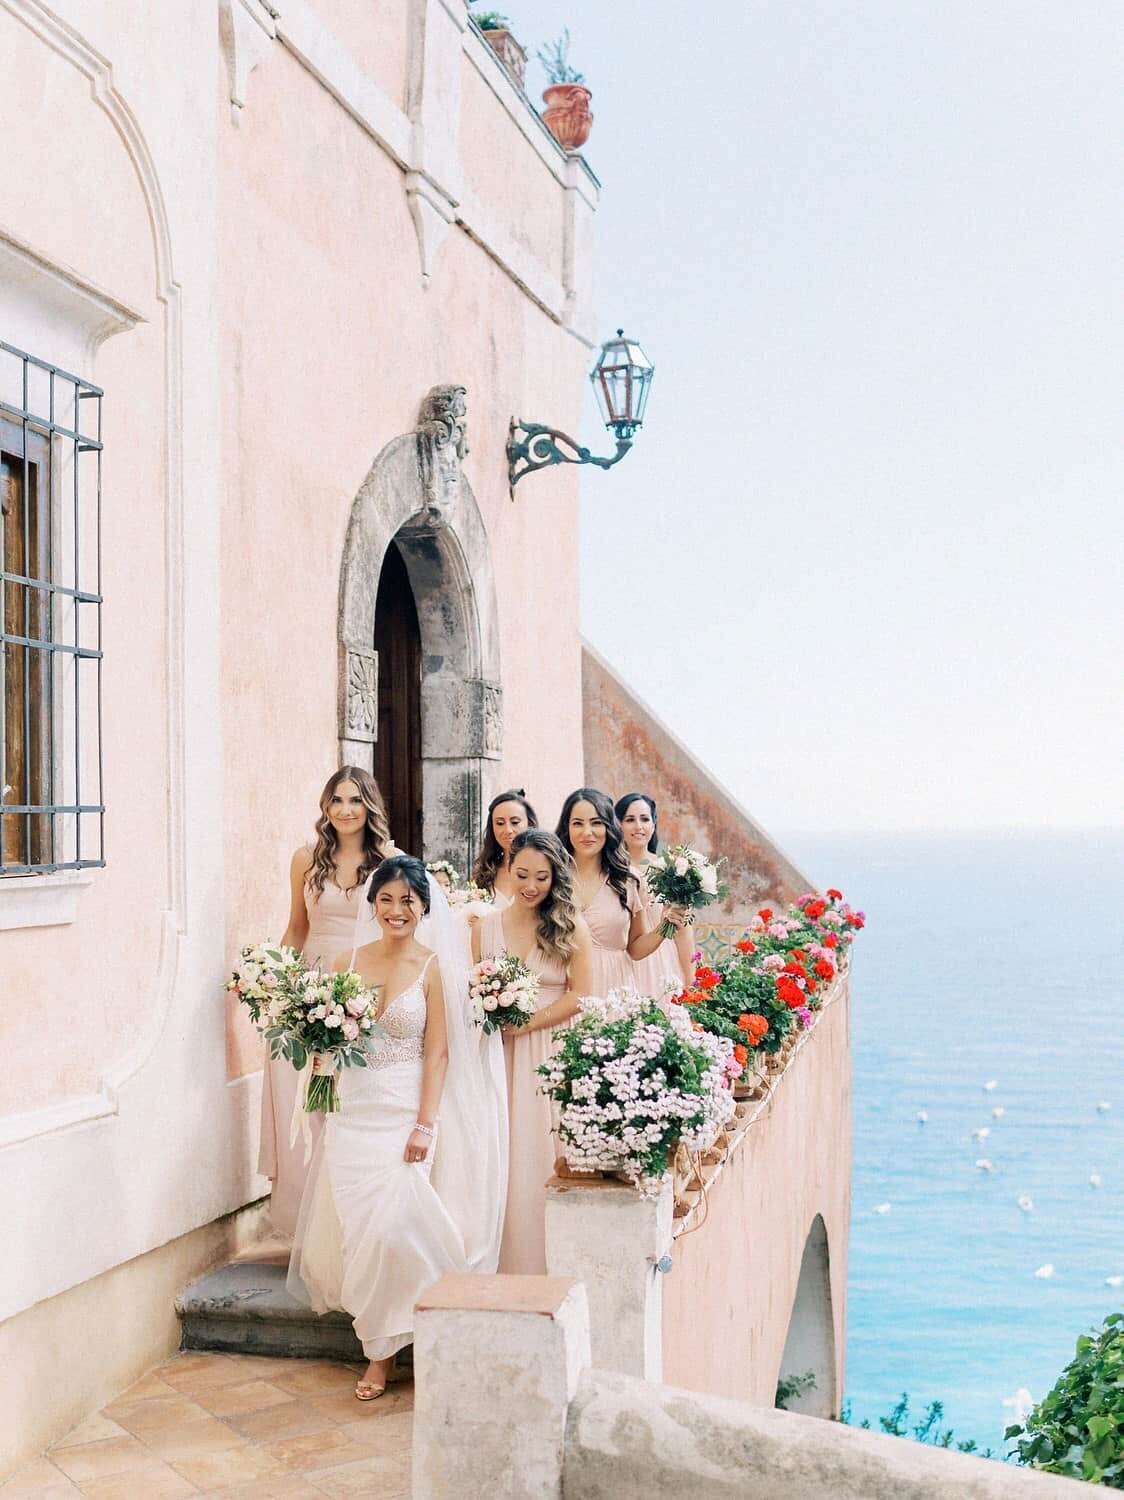 Positano-wedding-villa-San-Giacomo-bridesmaids-by-Julia-Kaptelova-Photography-244